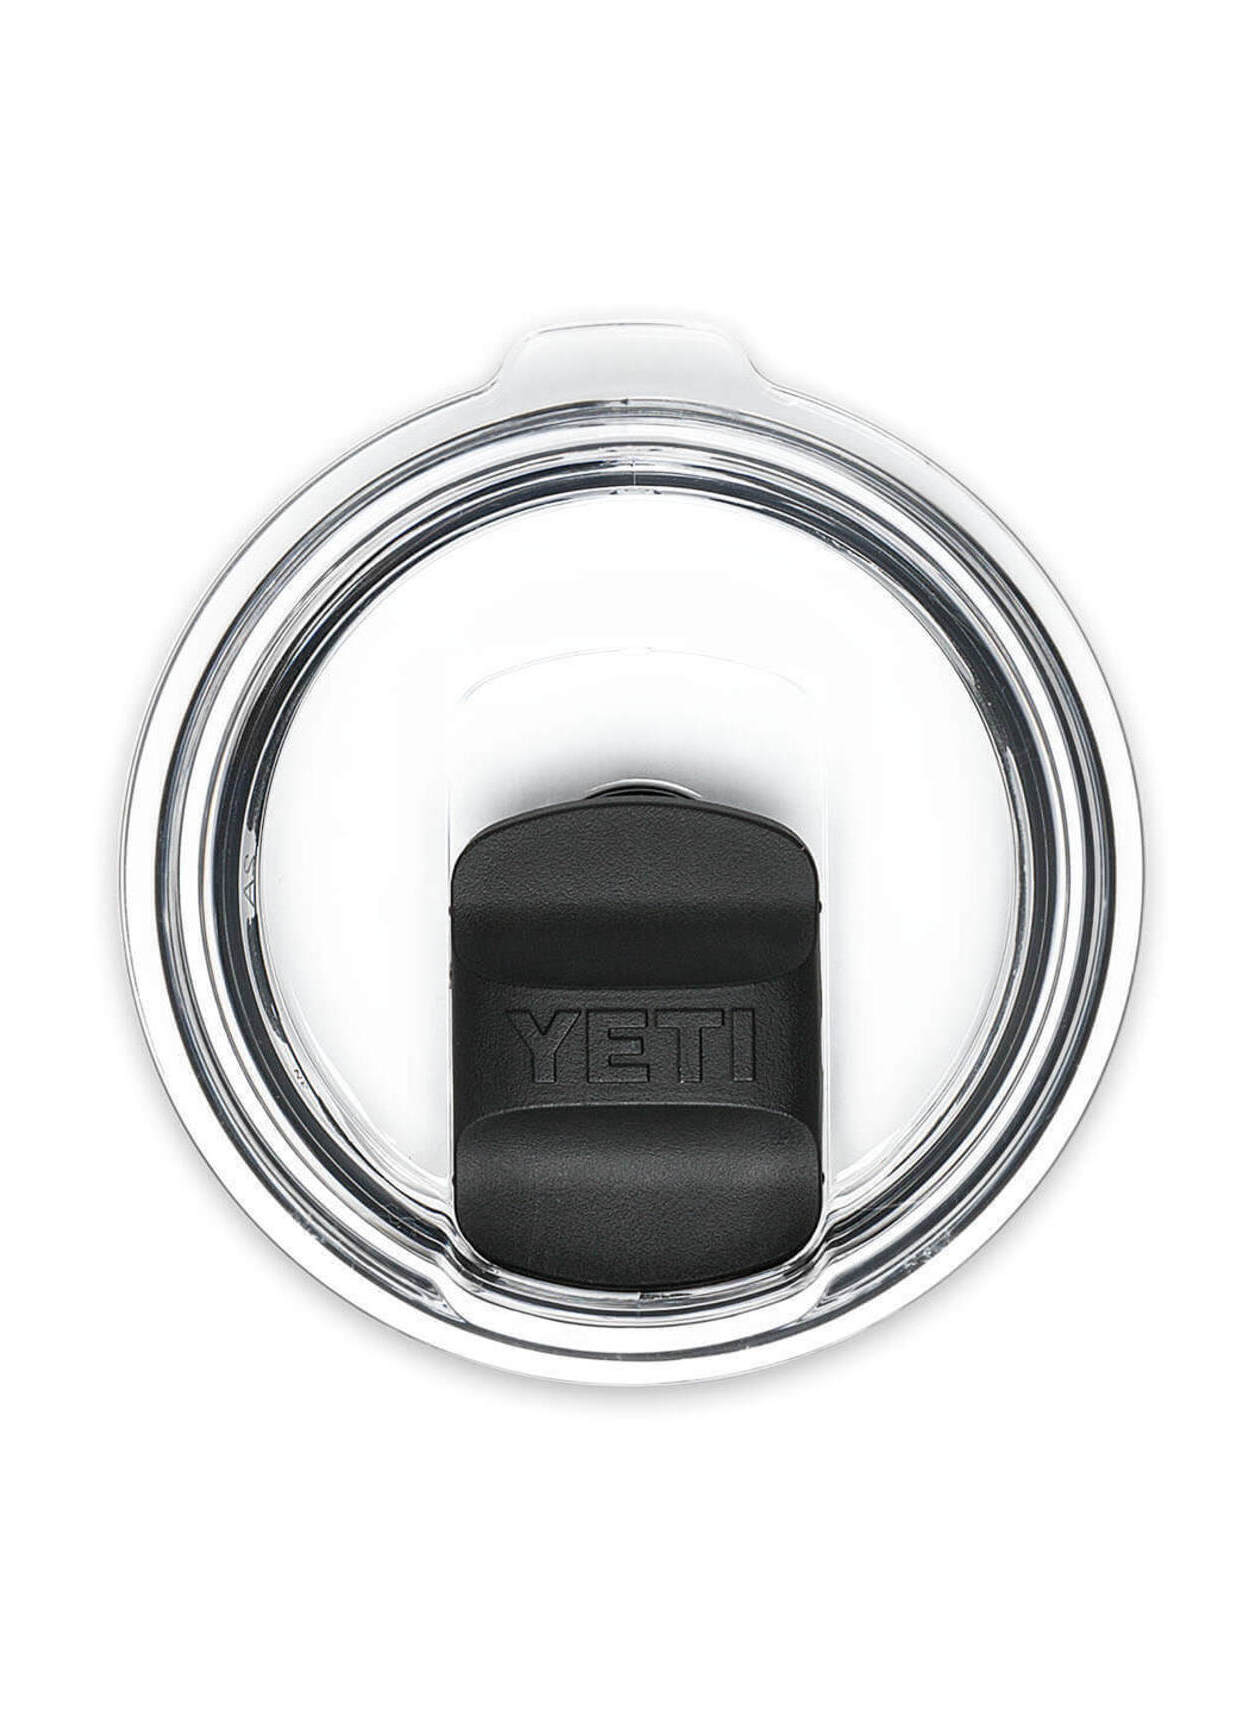 YETI® Rambler 10 OZ Stackable Mug with MagSlider Lid